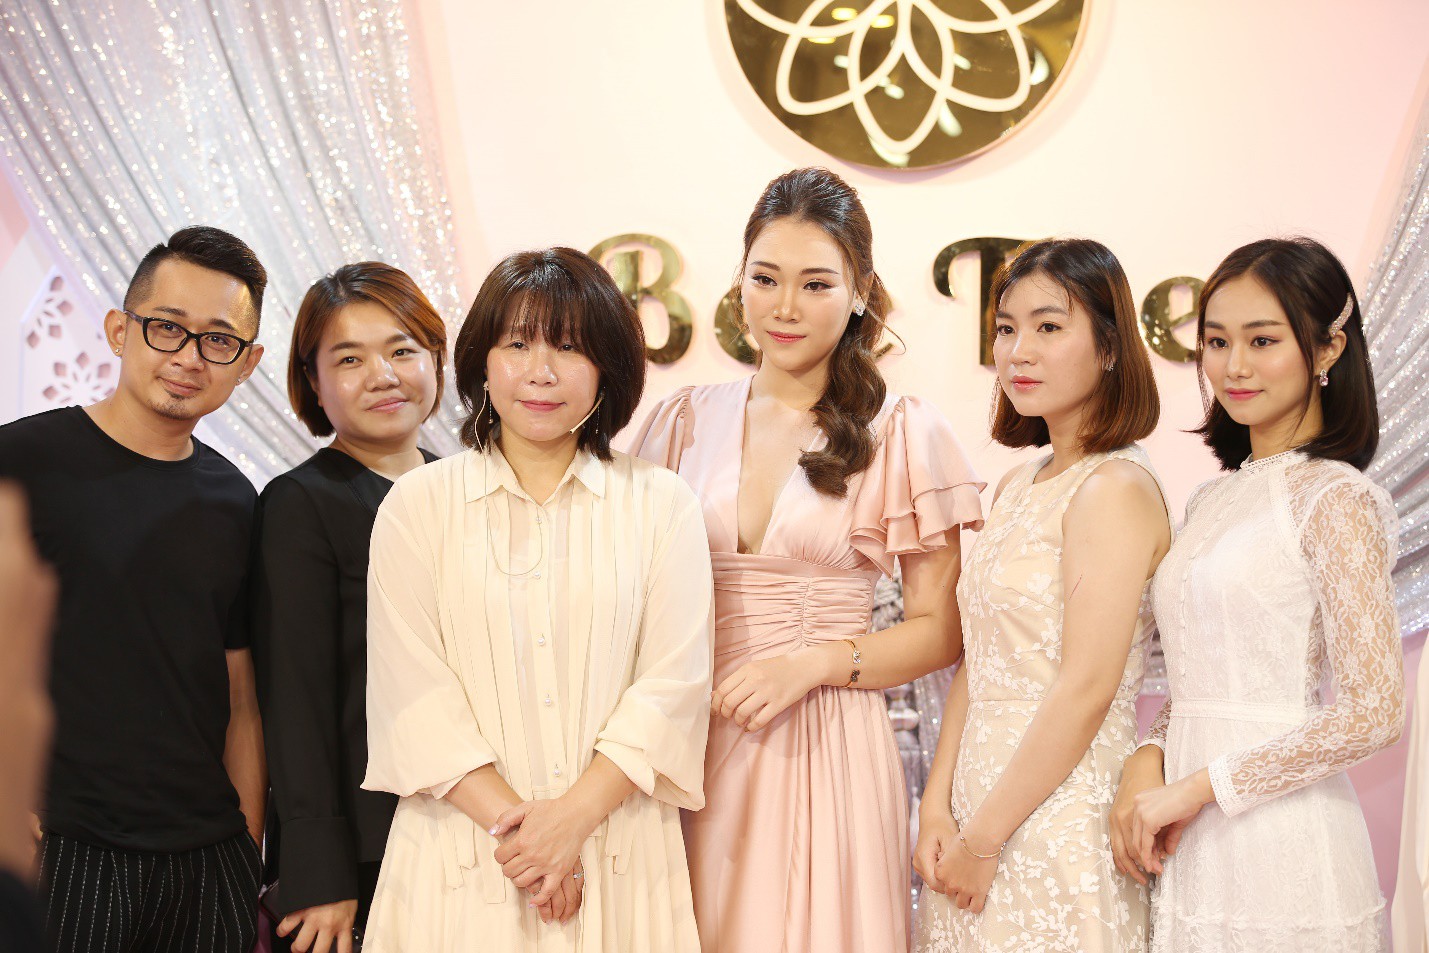 BeeTee Cosmetics - Thiên đường mua sắm mỹ phẩm mới khiến dàn mỹ nhân Việt check-in rần rần - Ảnh 10.